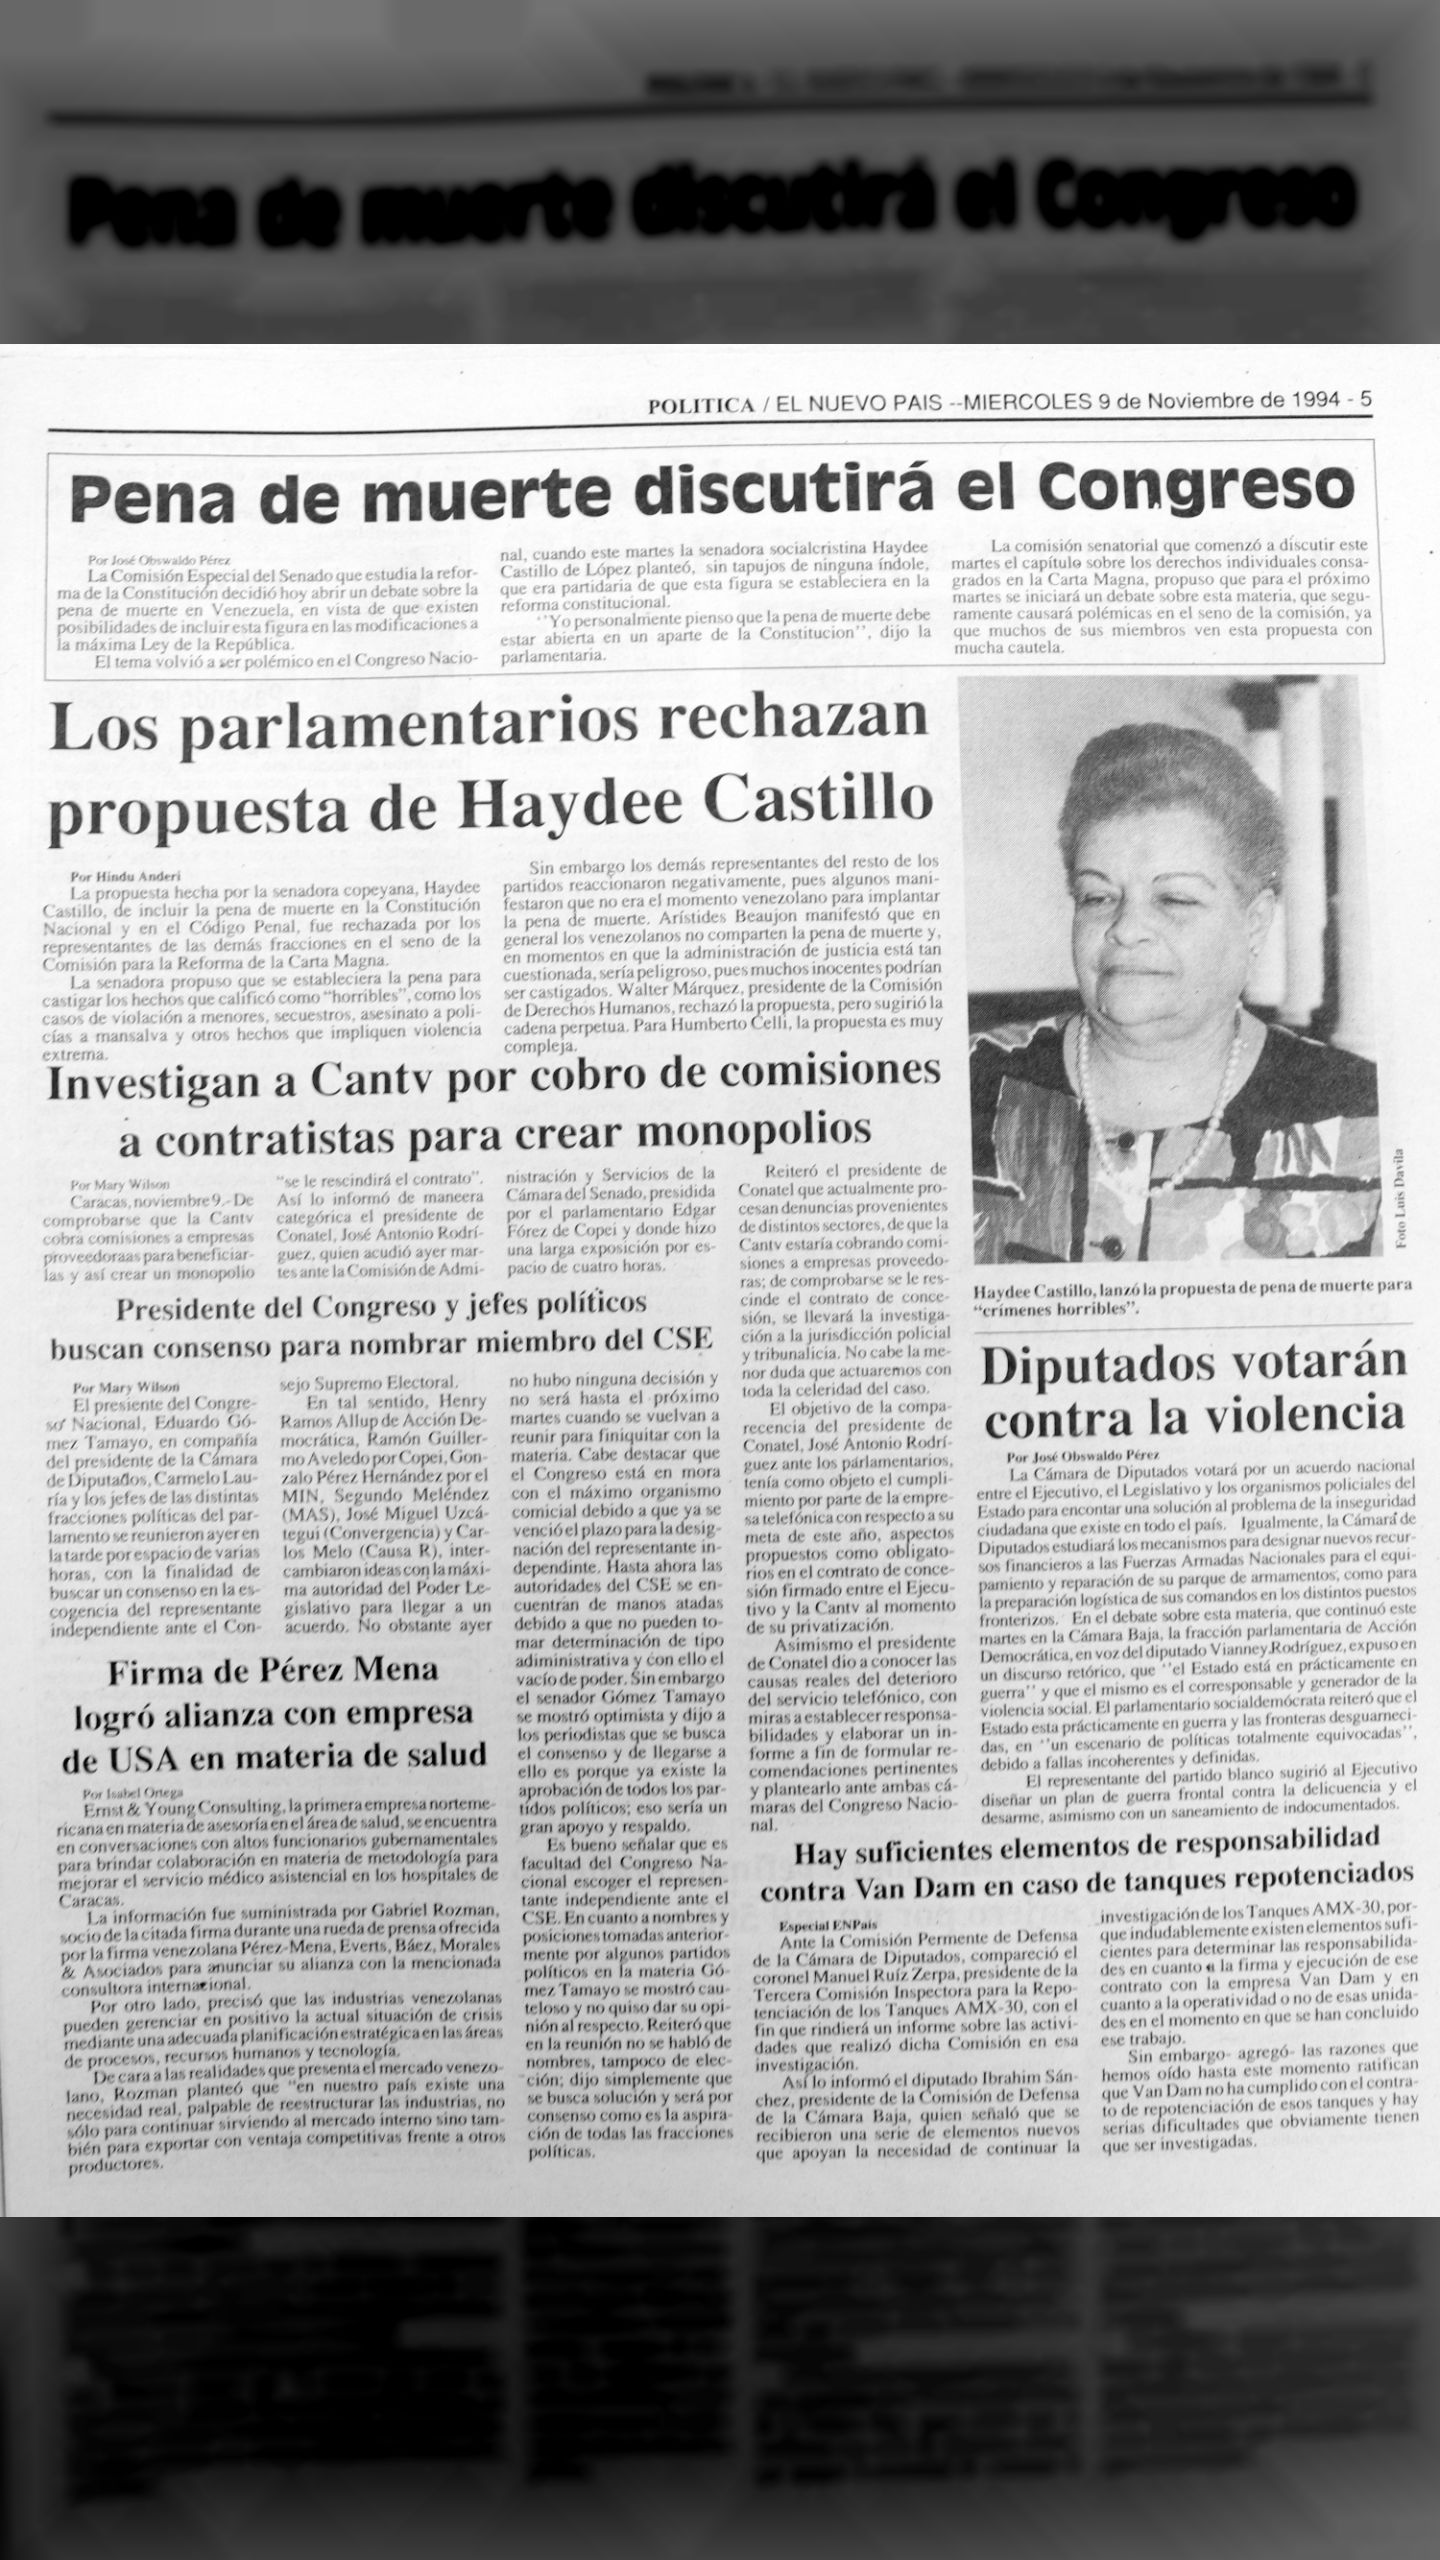 El Congreso discutirá la pena de muerte (El Nuevo País, 9 de noviembre 1994)